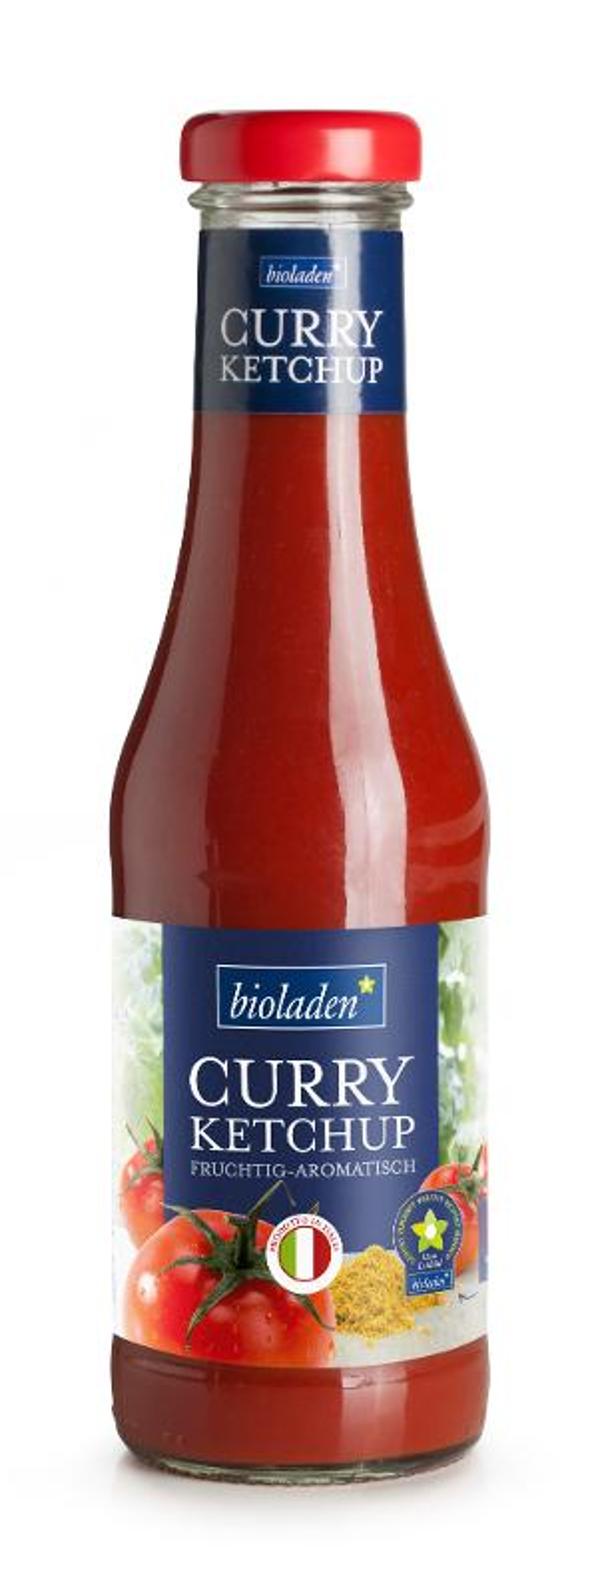 Produktfoto zu Curryketchup bioladen